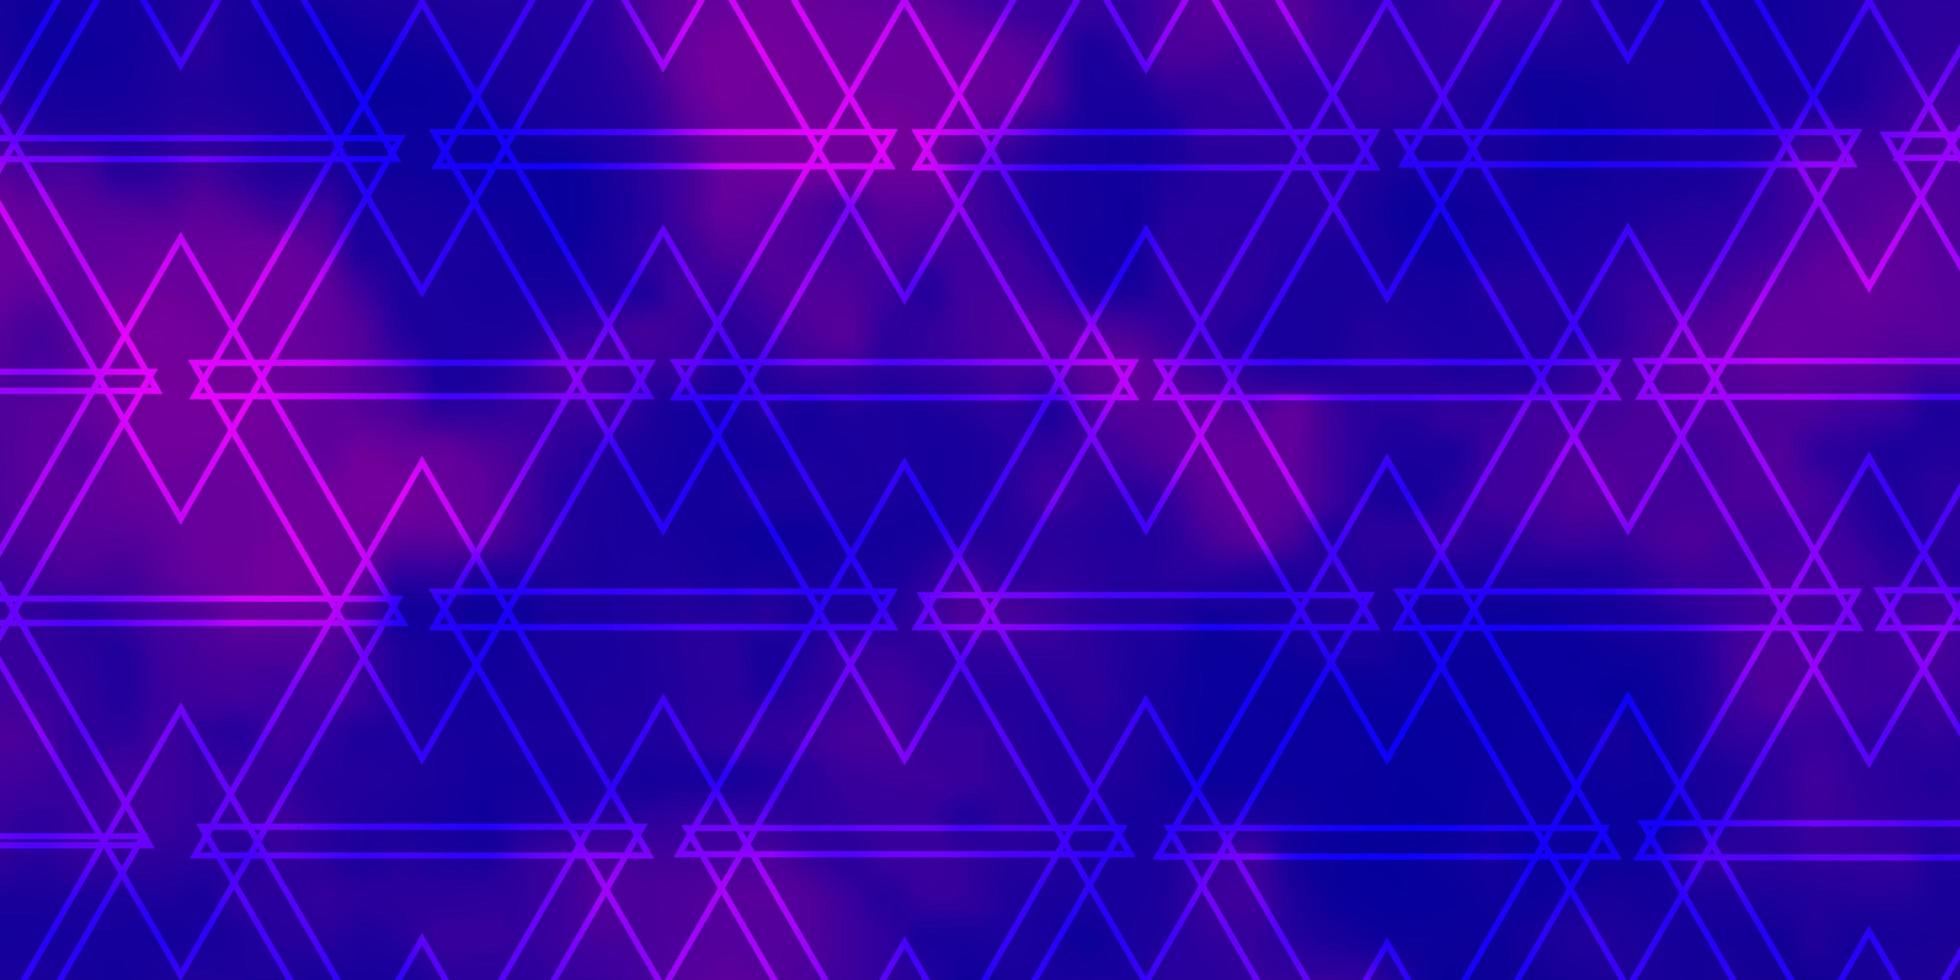 fundo vector roxo claro com triângulos ilustração gradiente abstrata com padrão de triângulos para comerciais